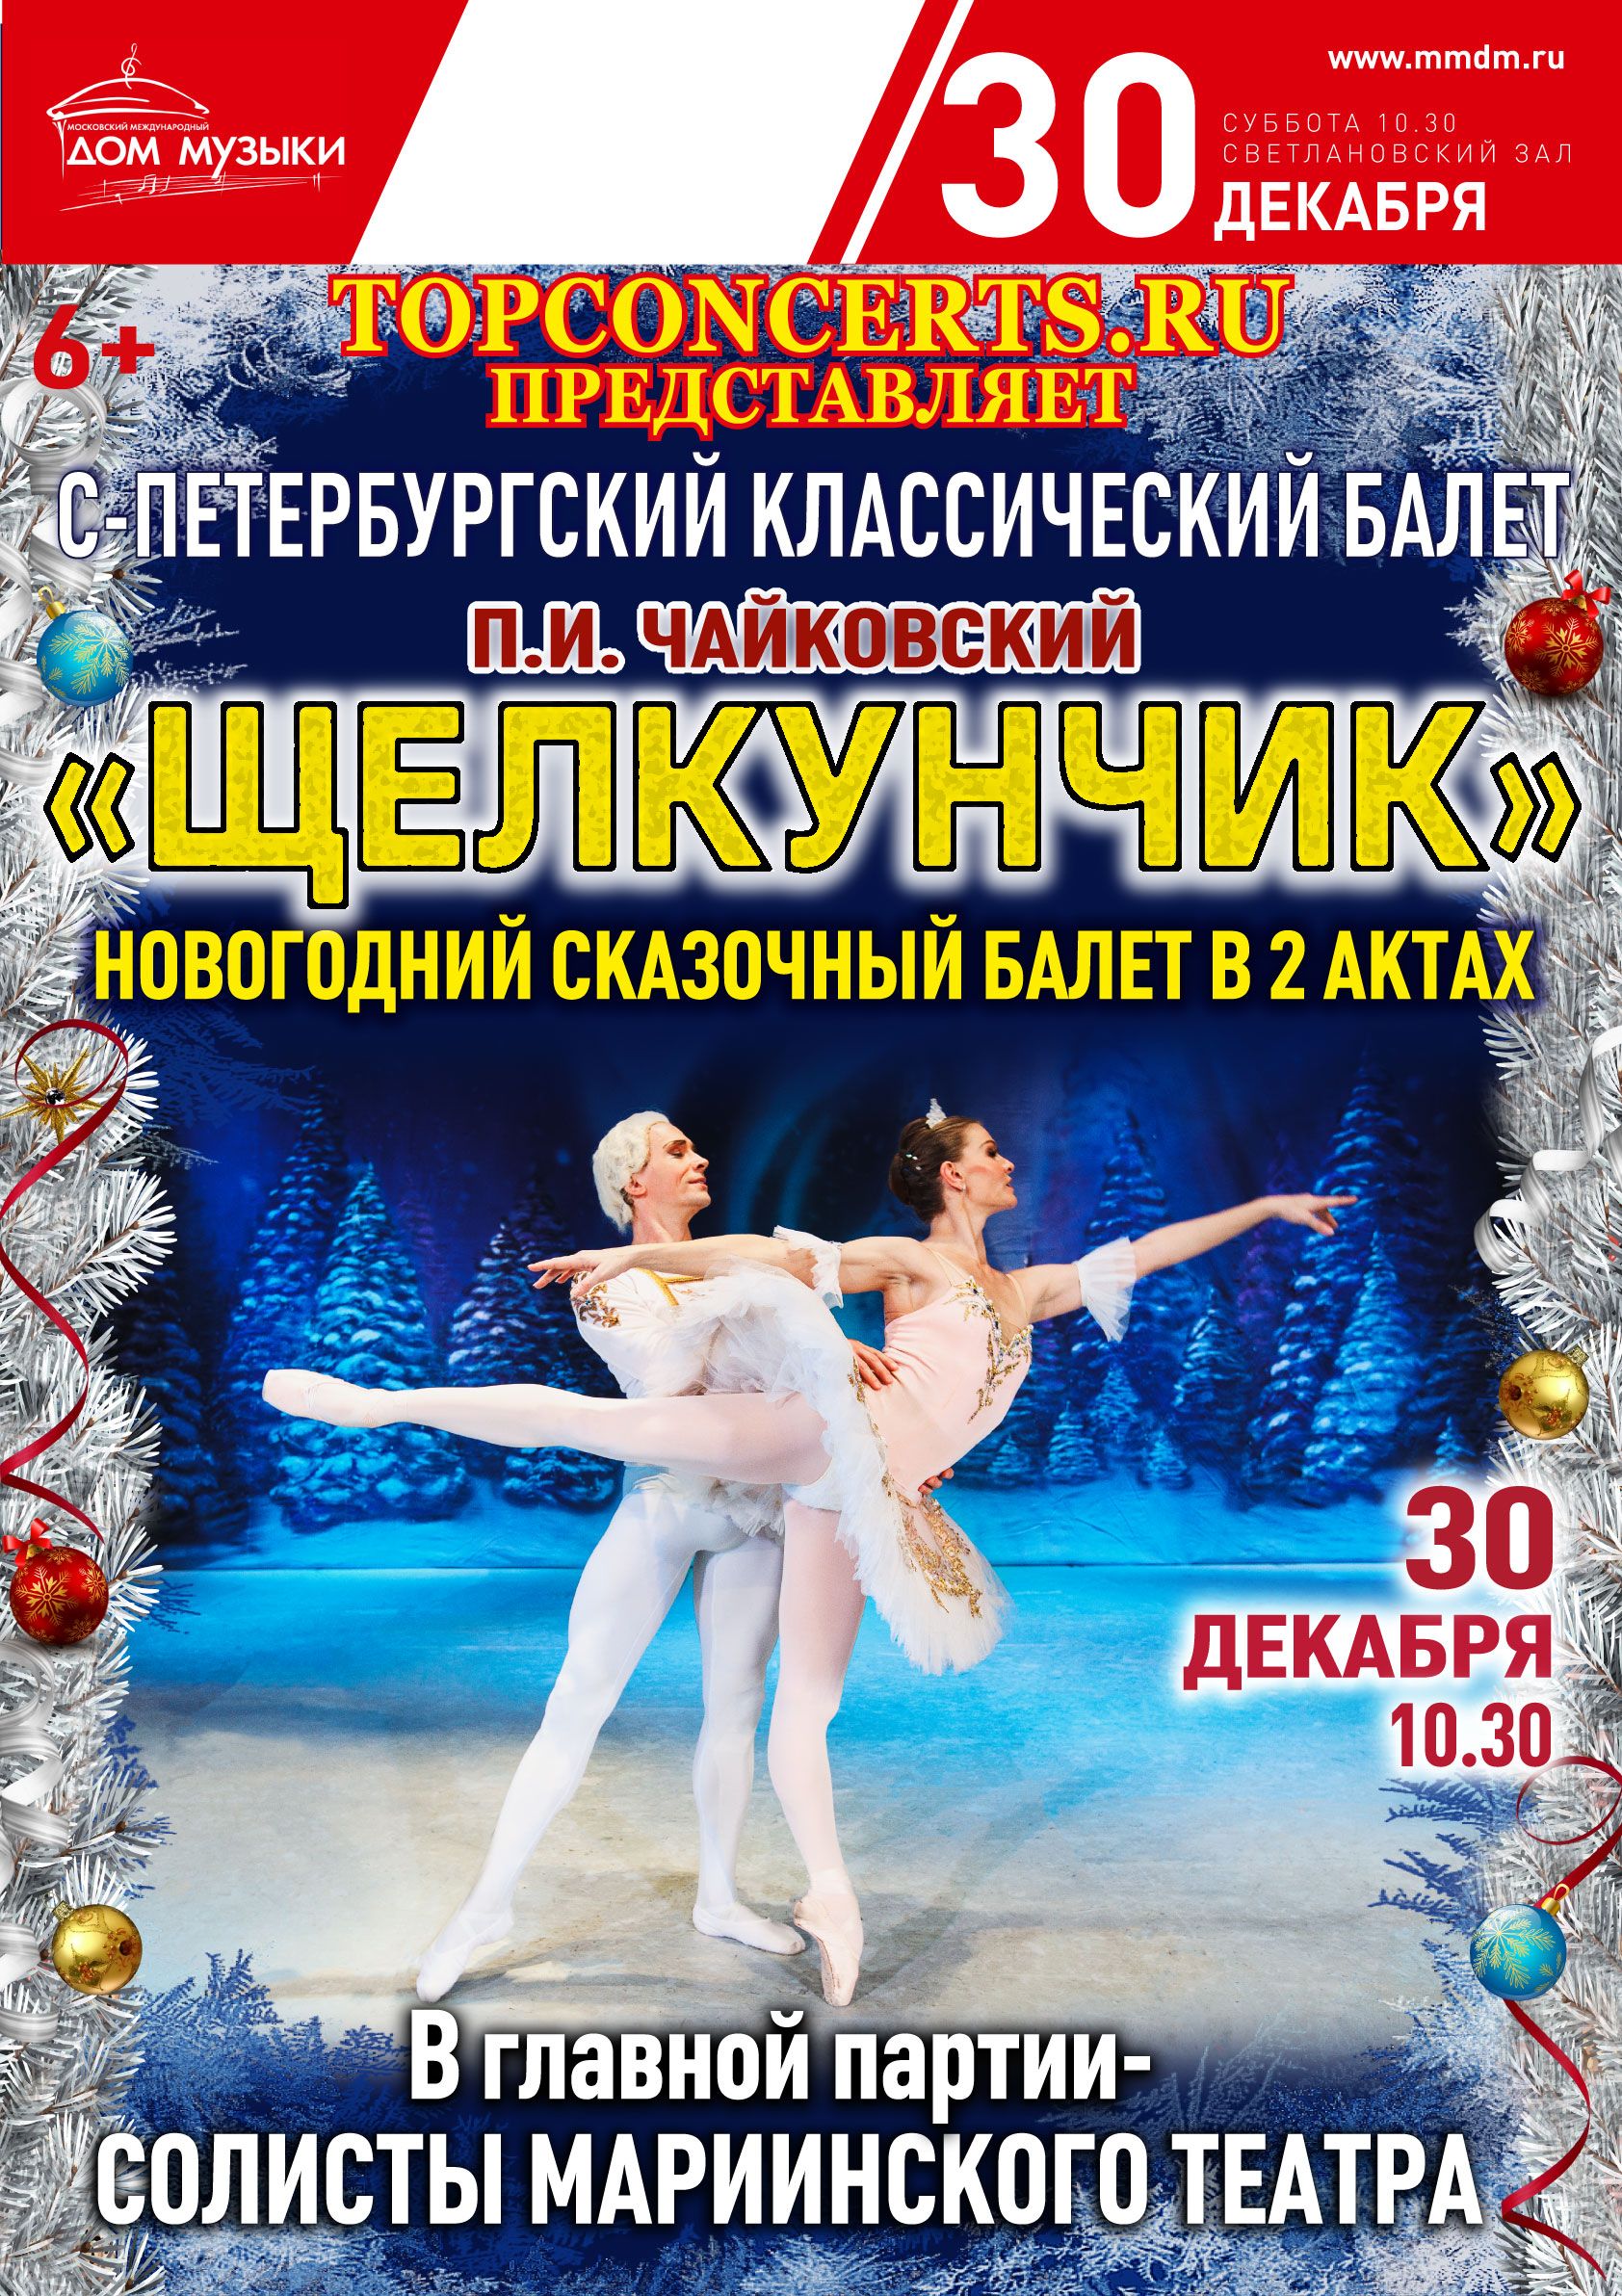 30 декабря Щелкунчик